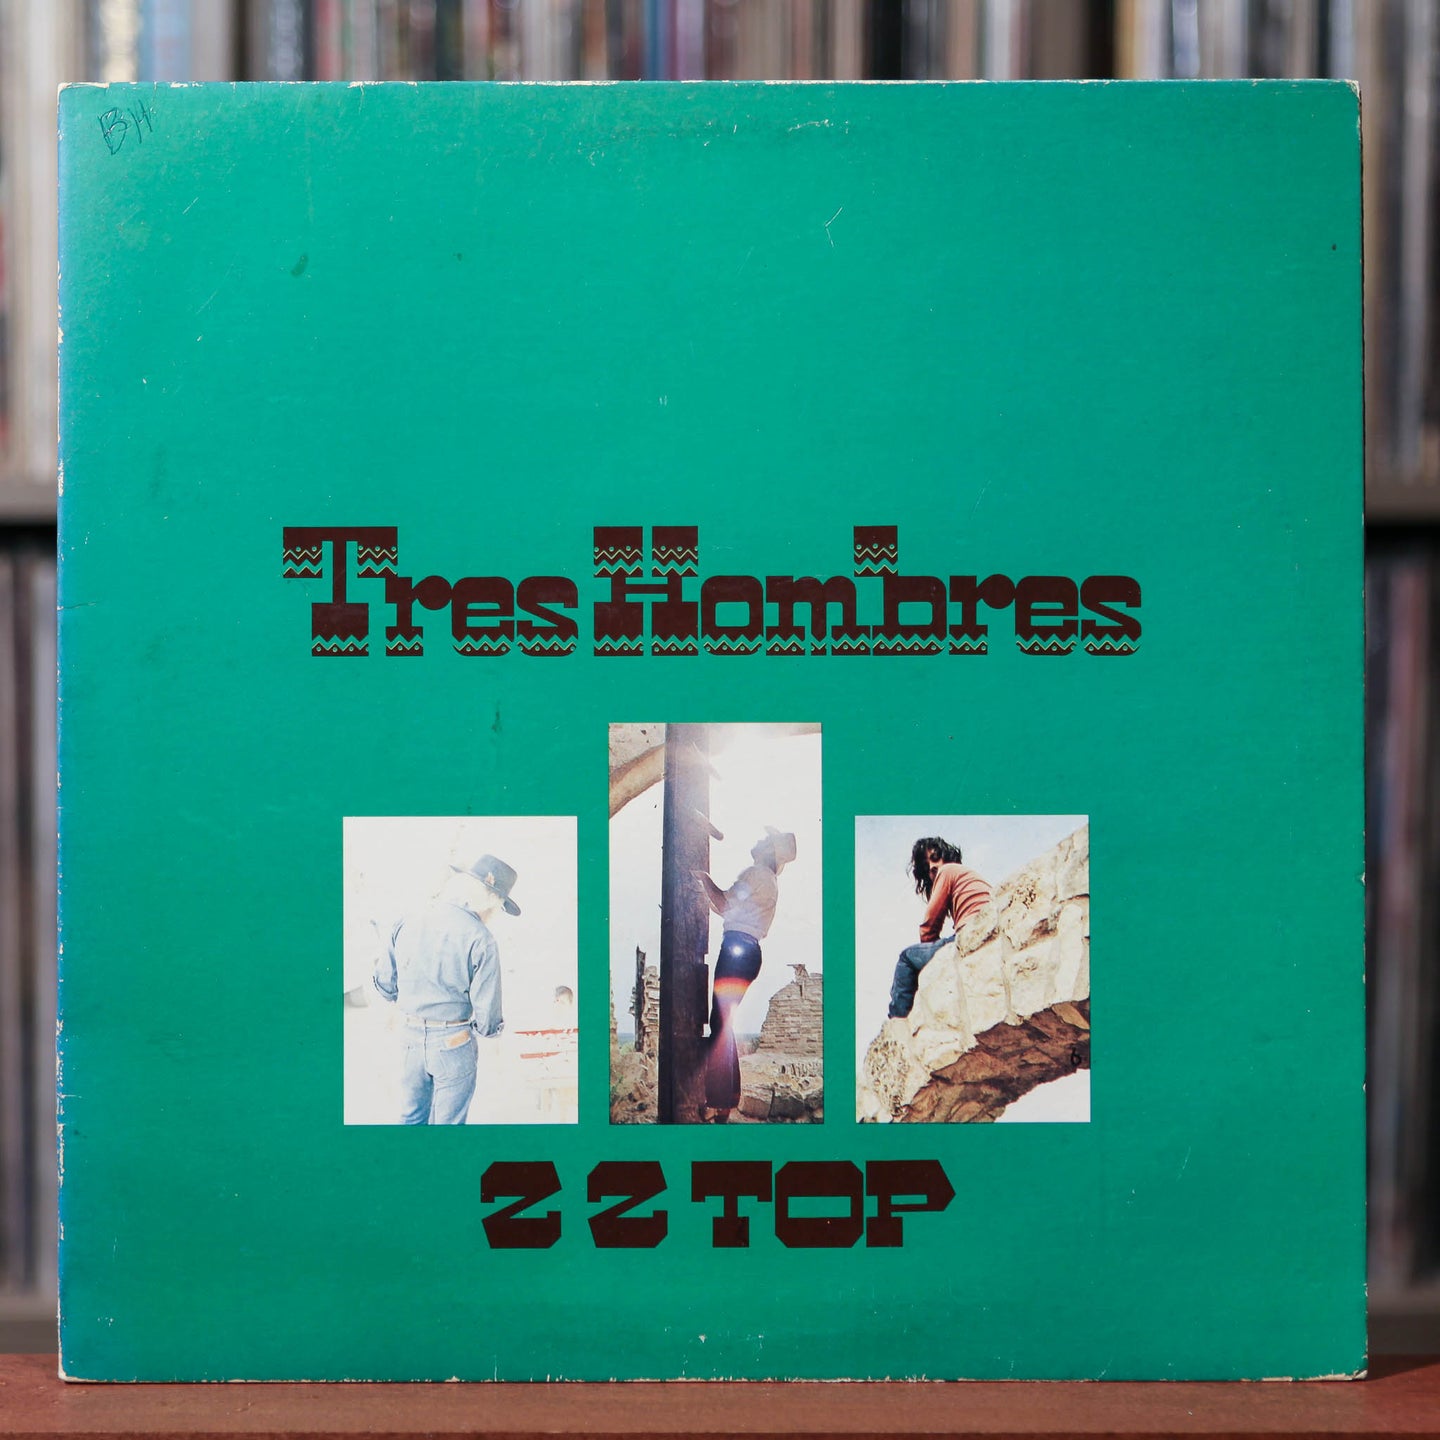 ZZ Top - Tres Hombres - 1978 Warner Bros, VG/VG